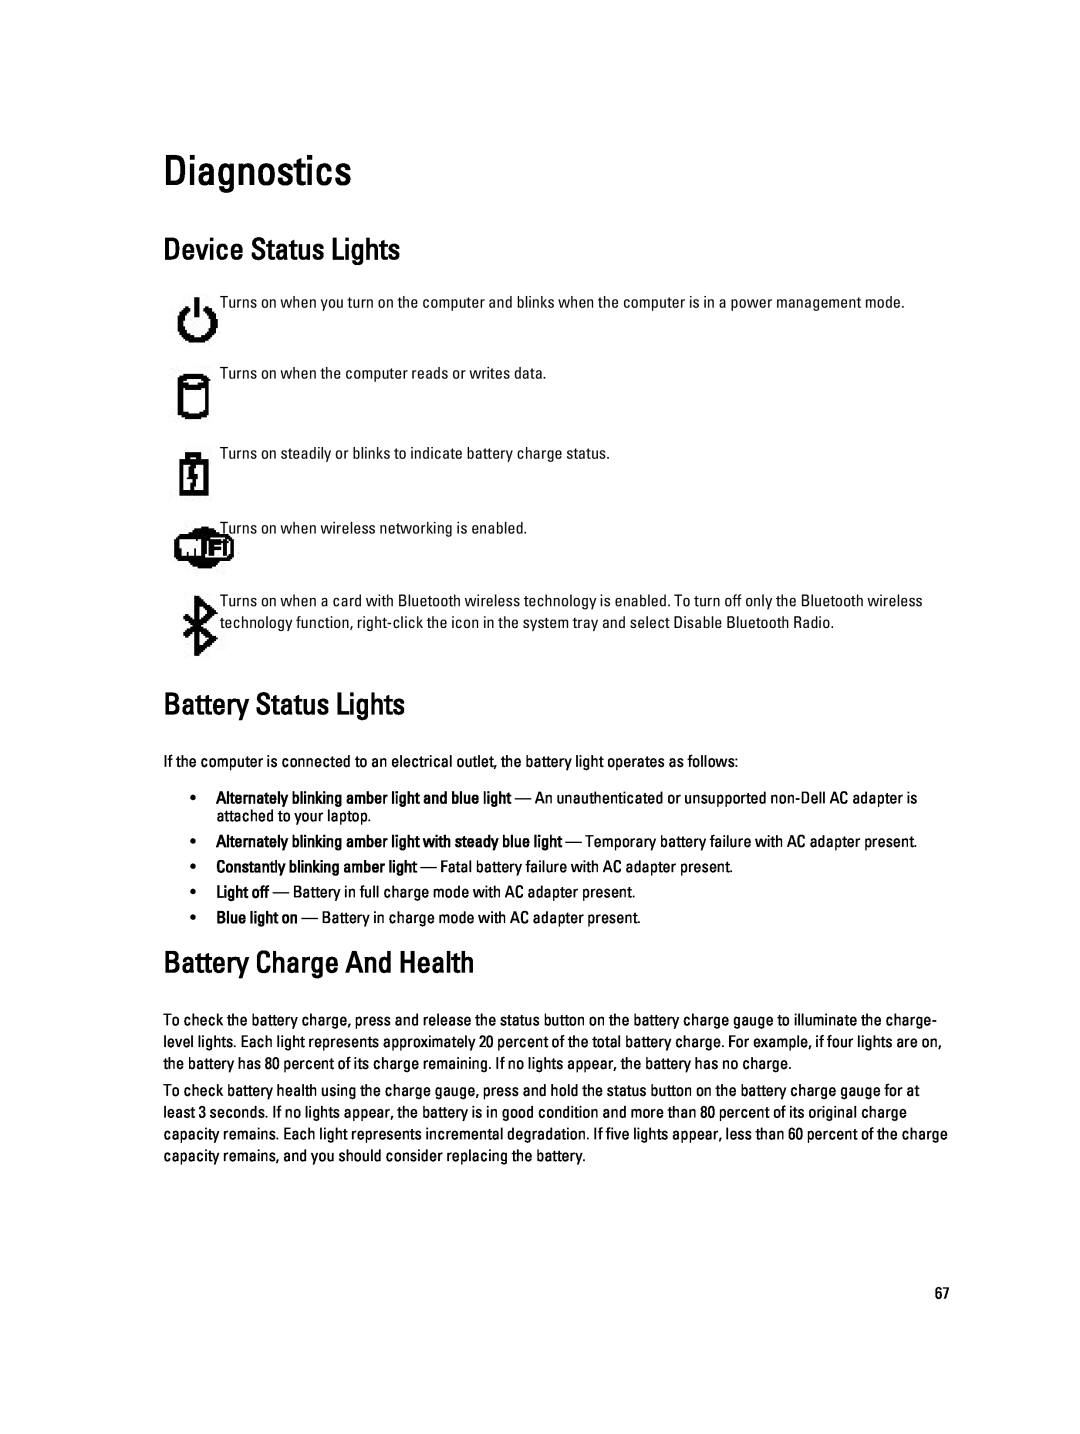 Dell V130 service manual Diagnostics, Device Status Lights, Battery Status Lights, Battery Charge And Health 